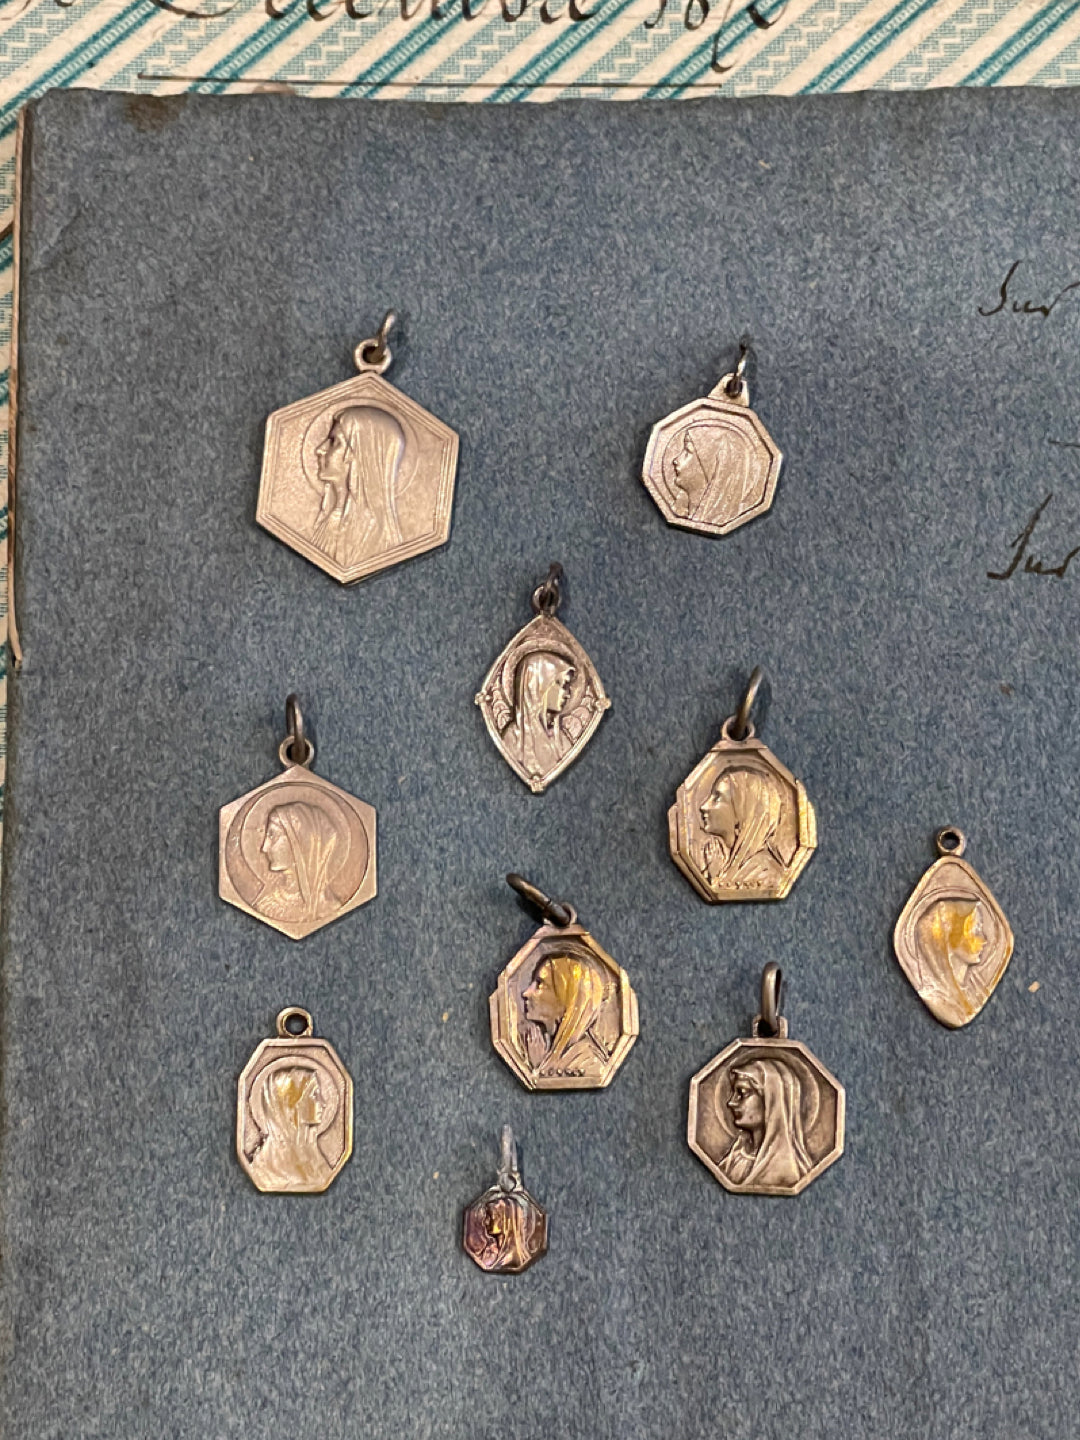 Original Vintage Medals from France - RM16